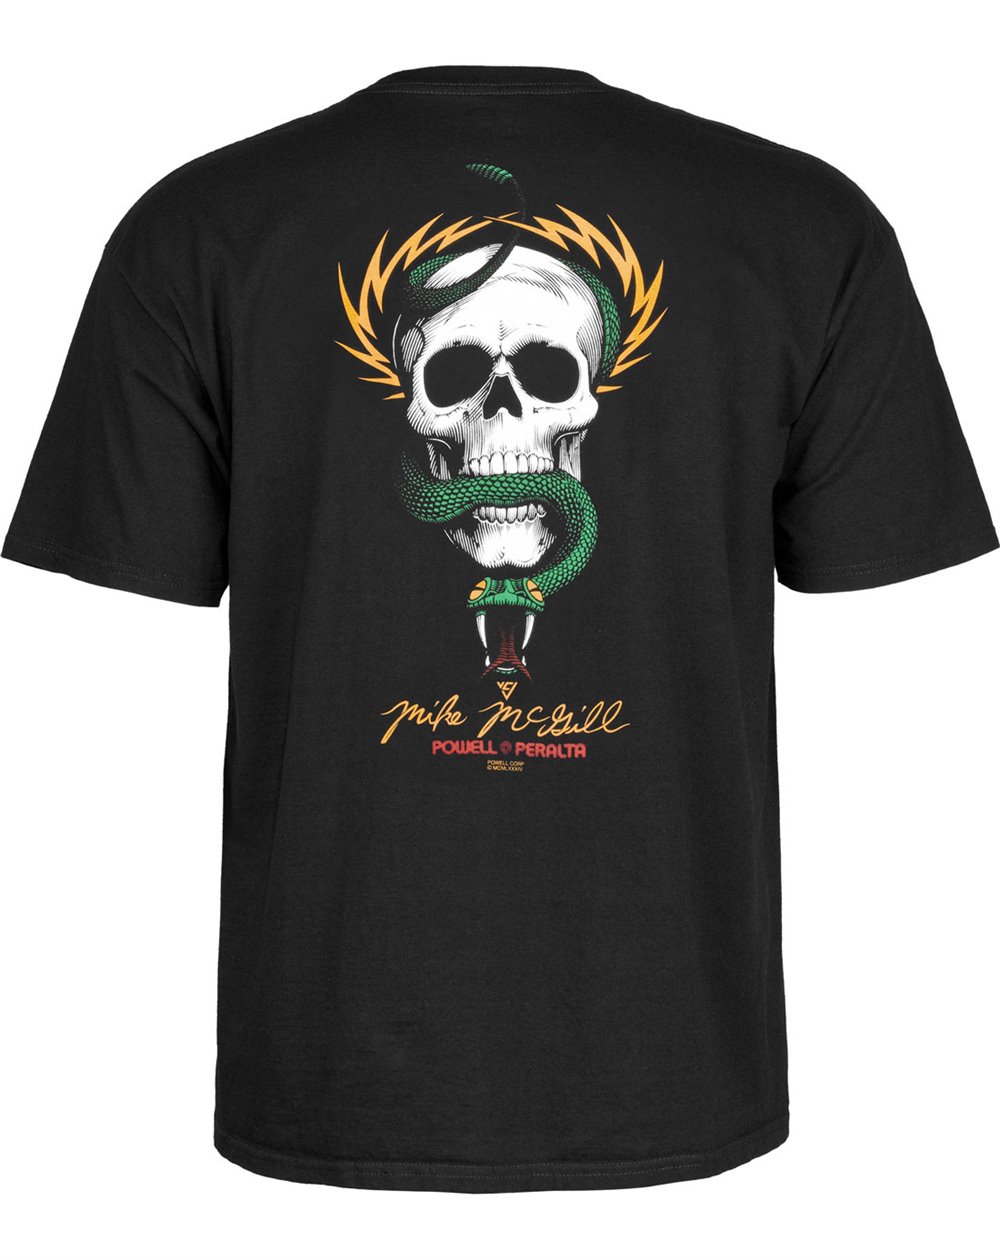 Powell Peralta Mike McGill Skull & Snake T-Shirt Homme Black